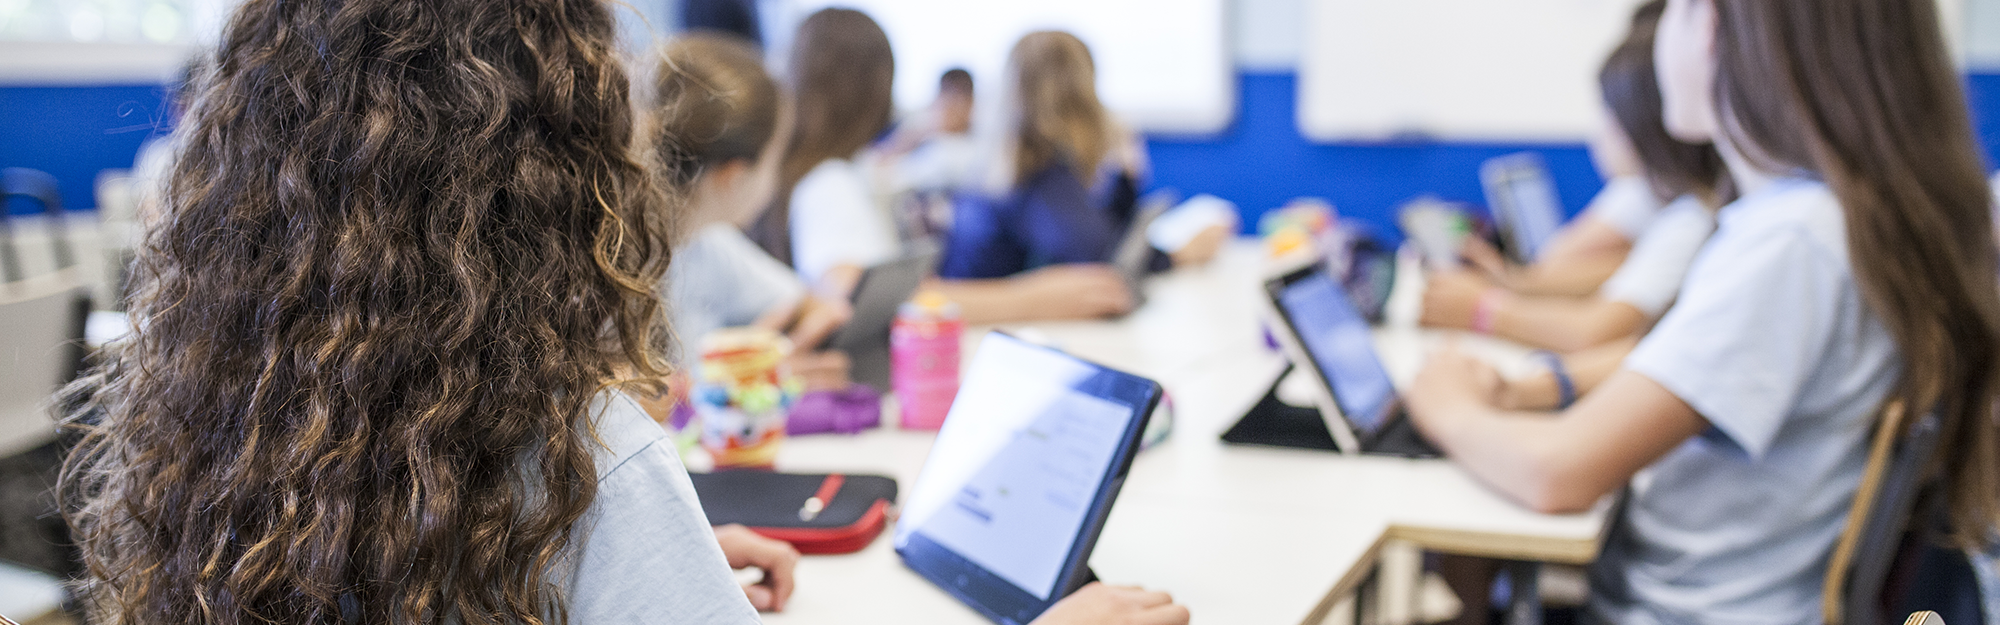 Schule digital = Ihr Wissen & unsere Kompetenz